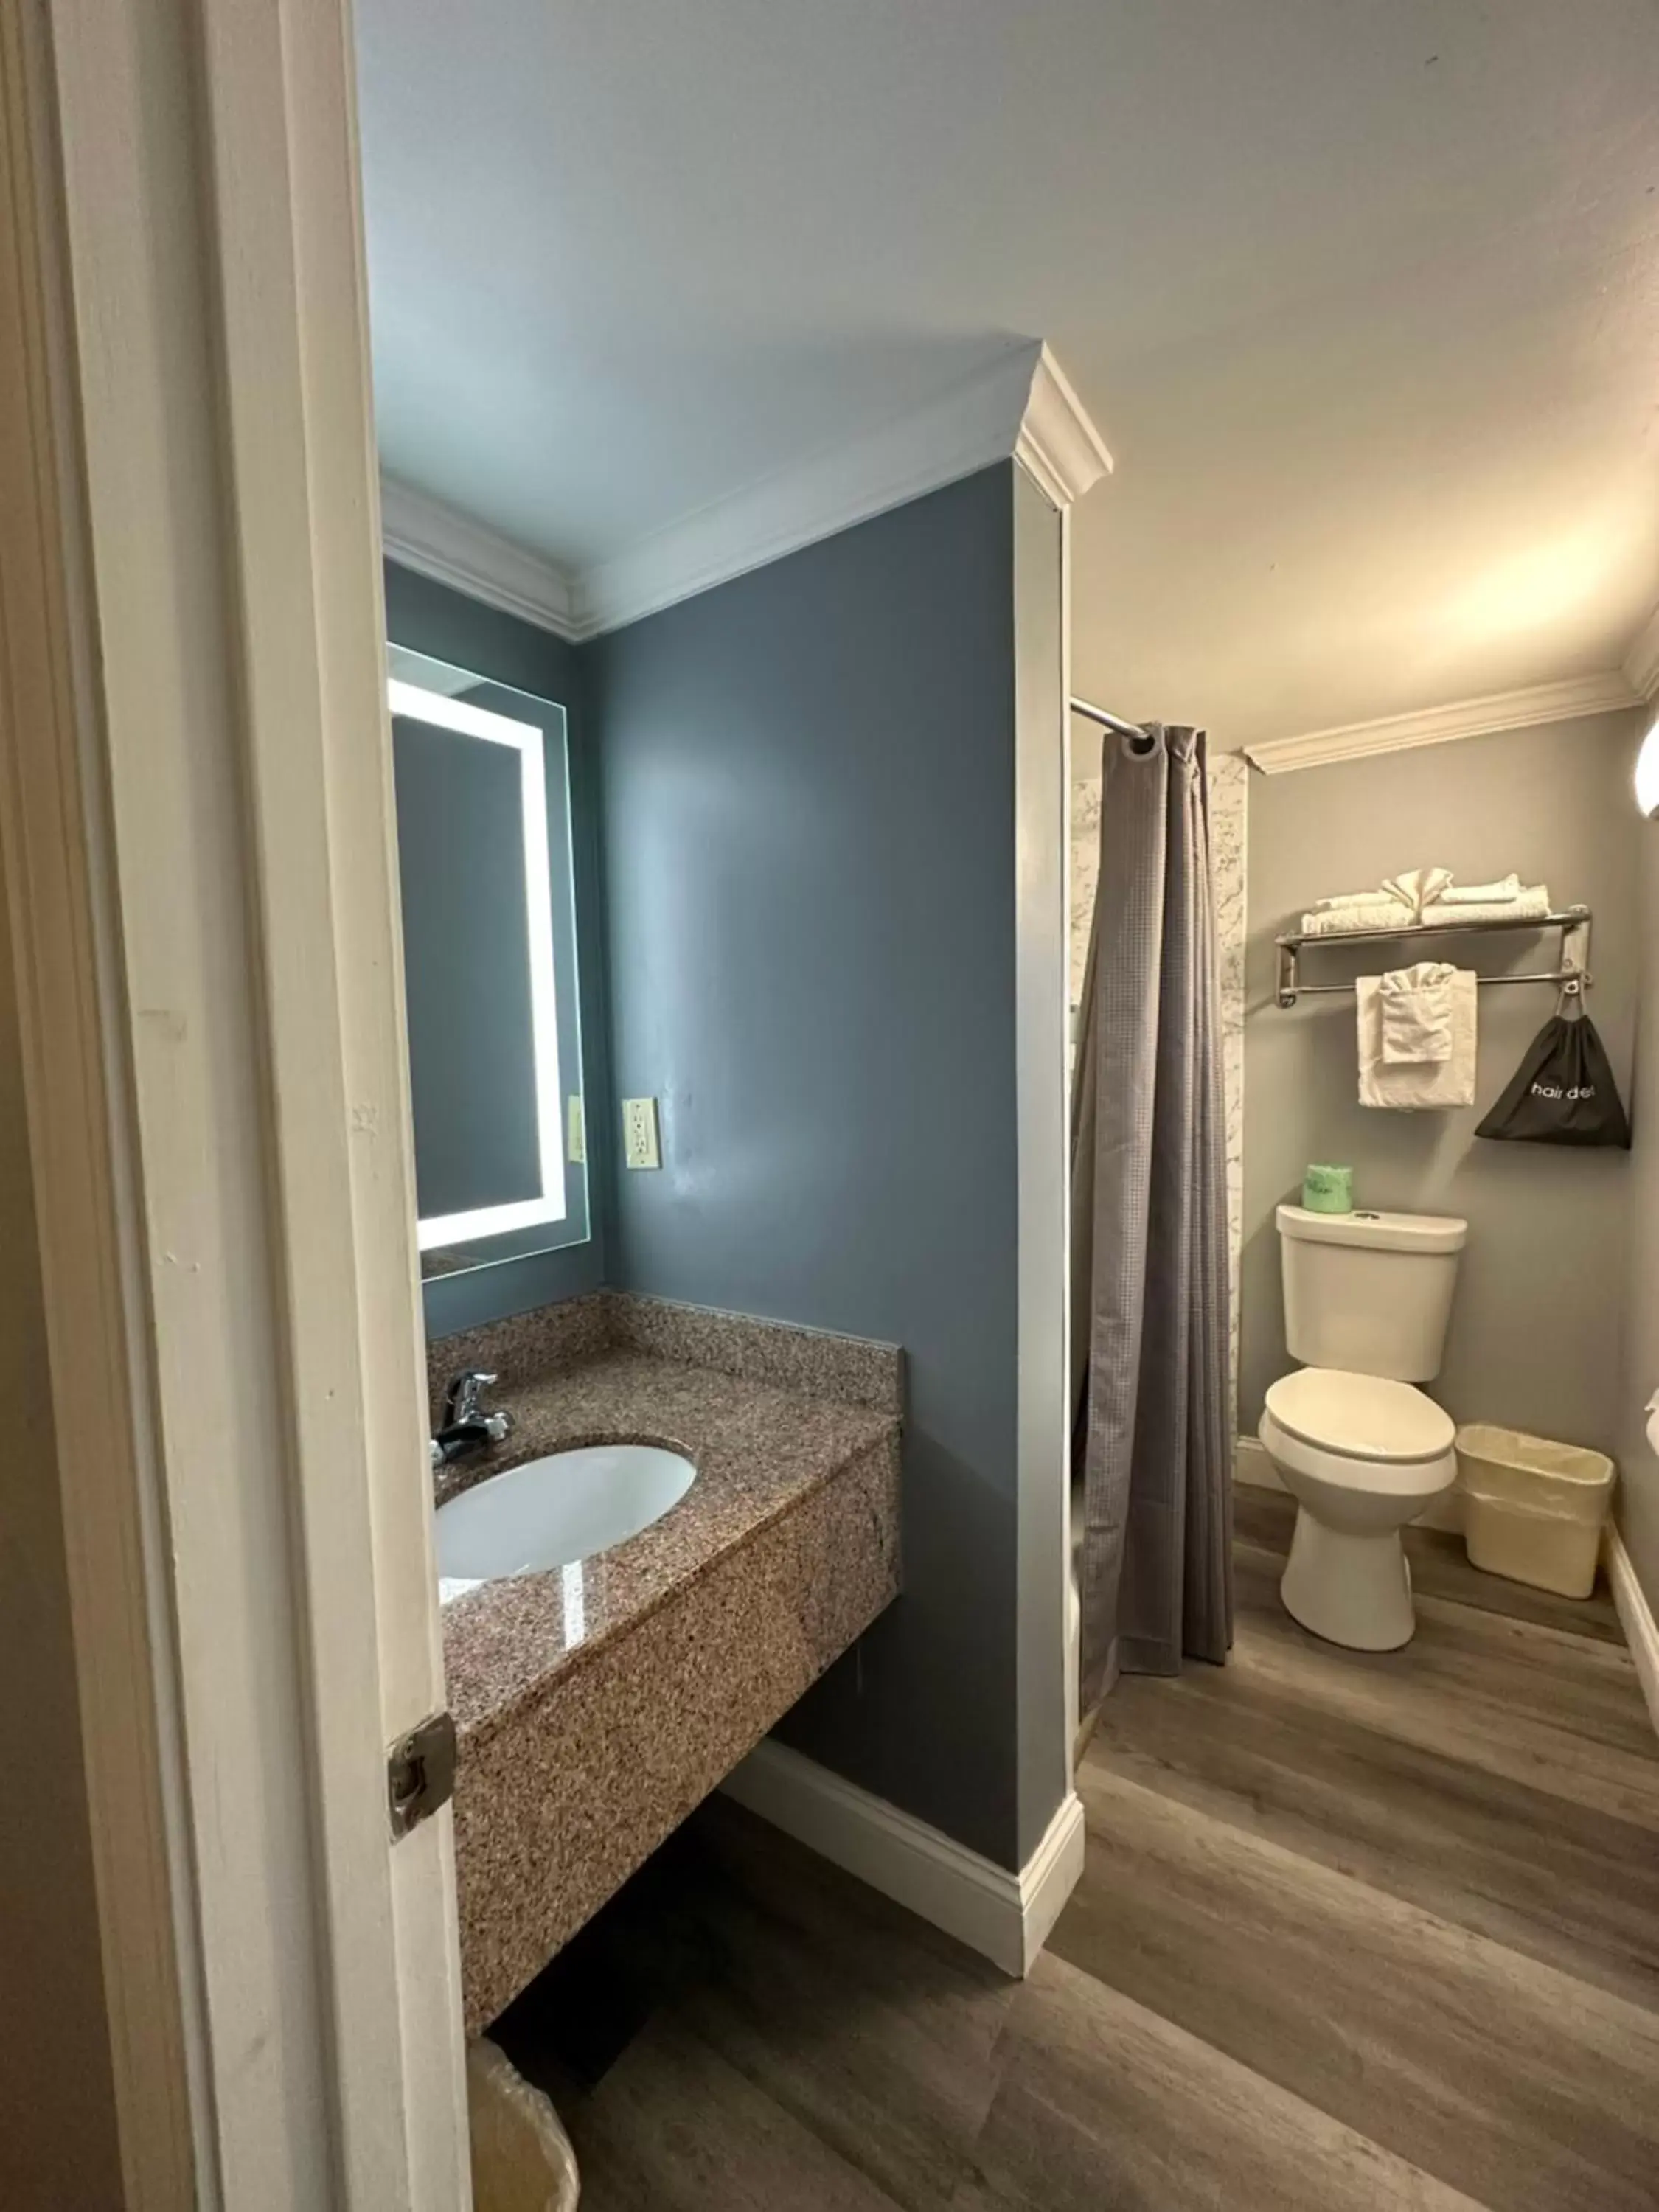 Toilet, Bathroom in Rodeway Inn Orleans - Cape Cod